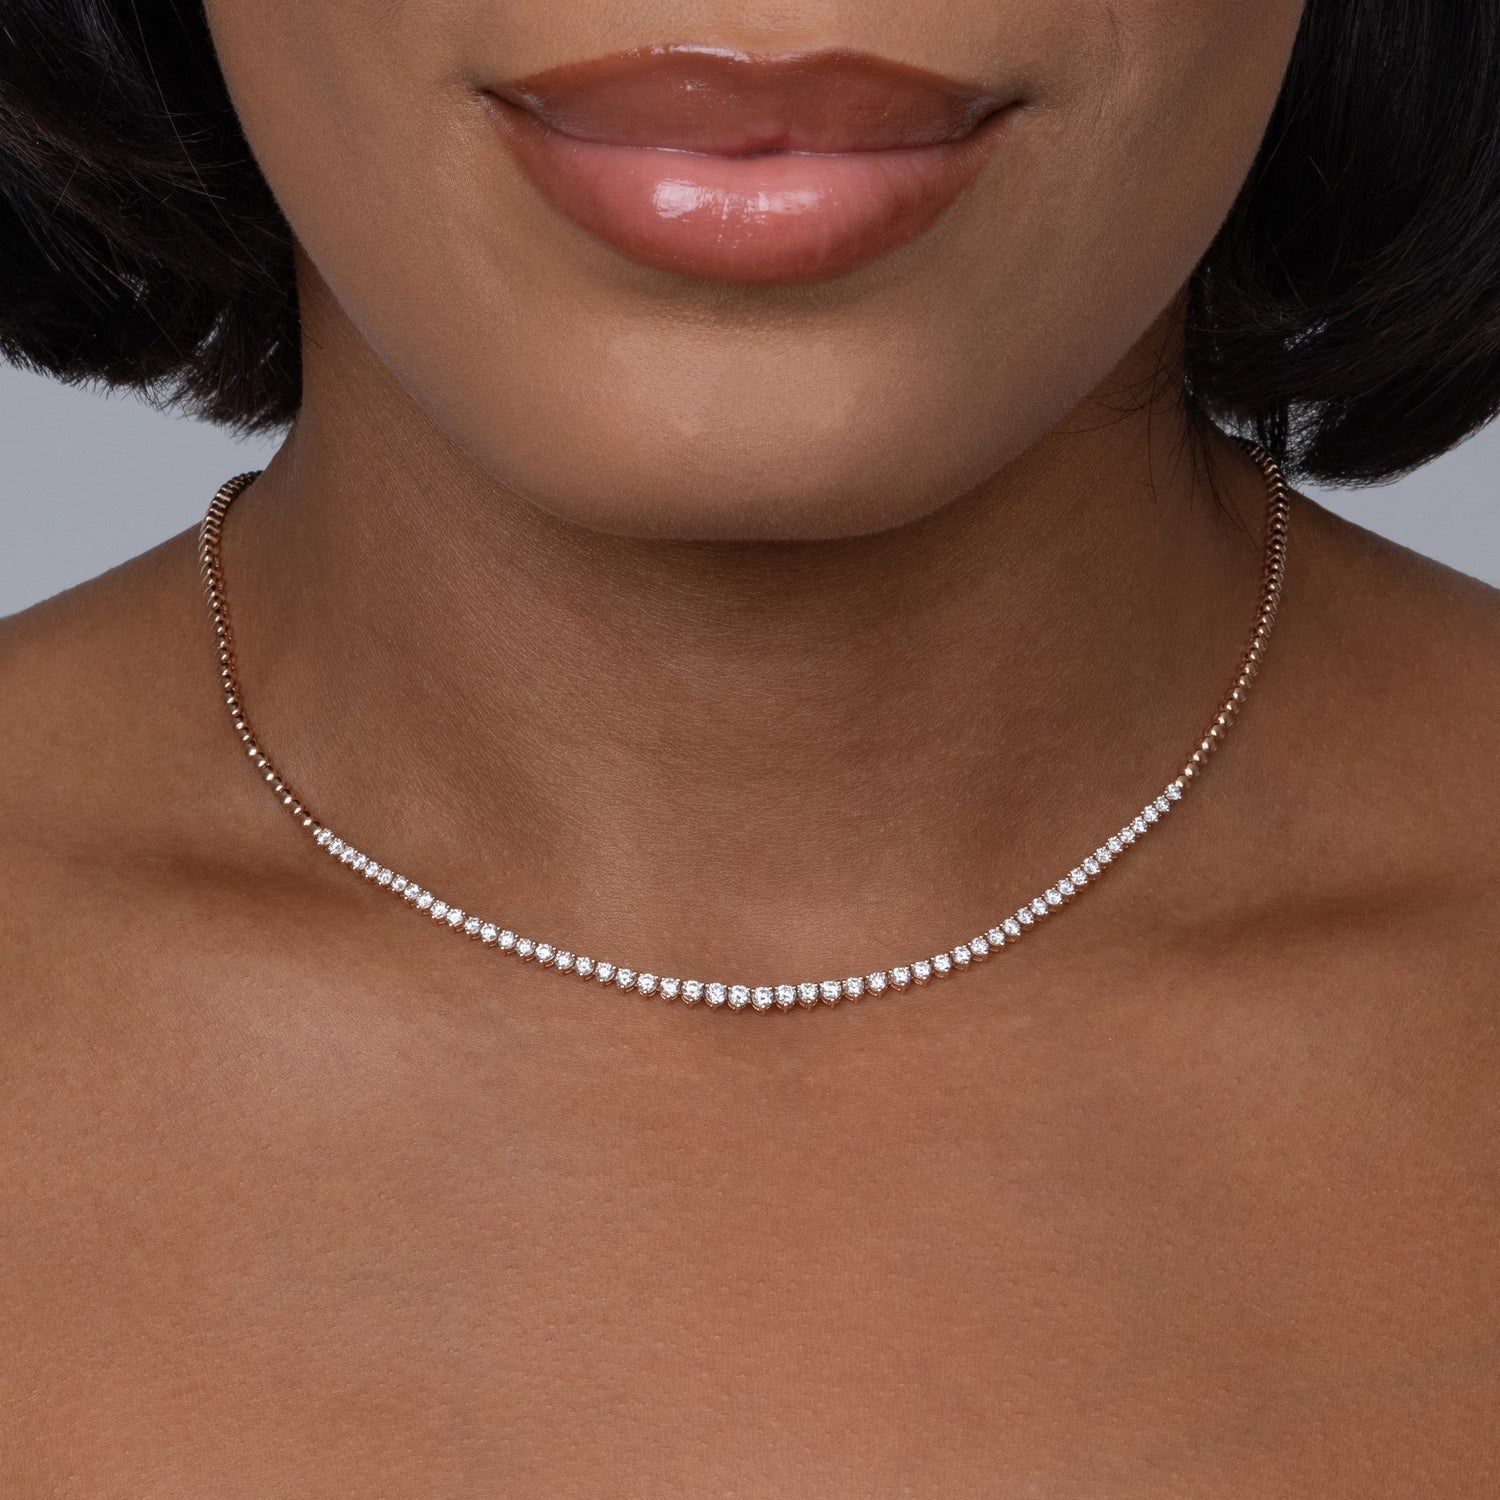 DIAMOND GARBO CHOKER | Silver diamond necklace, Diamond necklace designs,  Diamond bracelet design